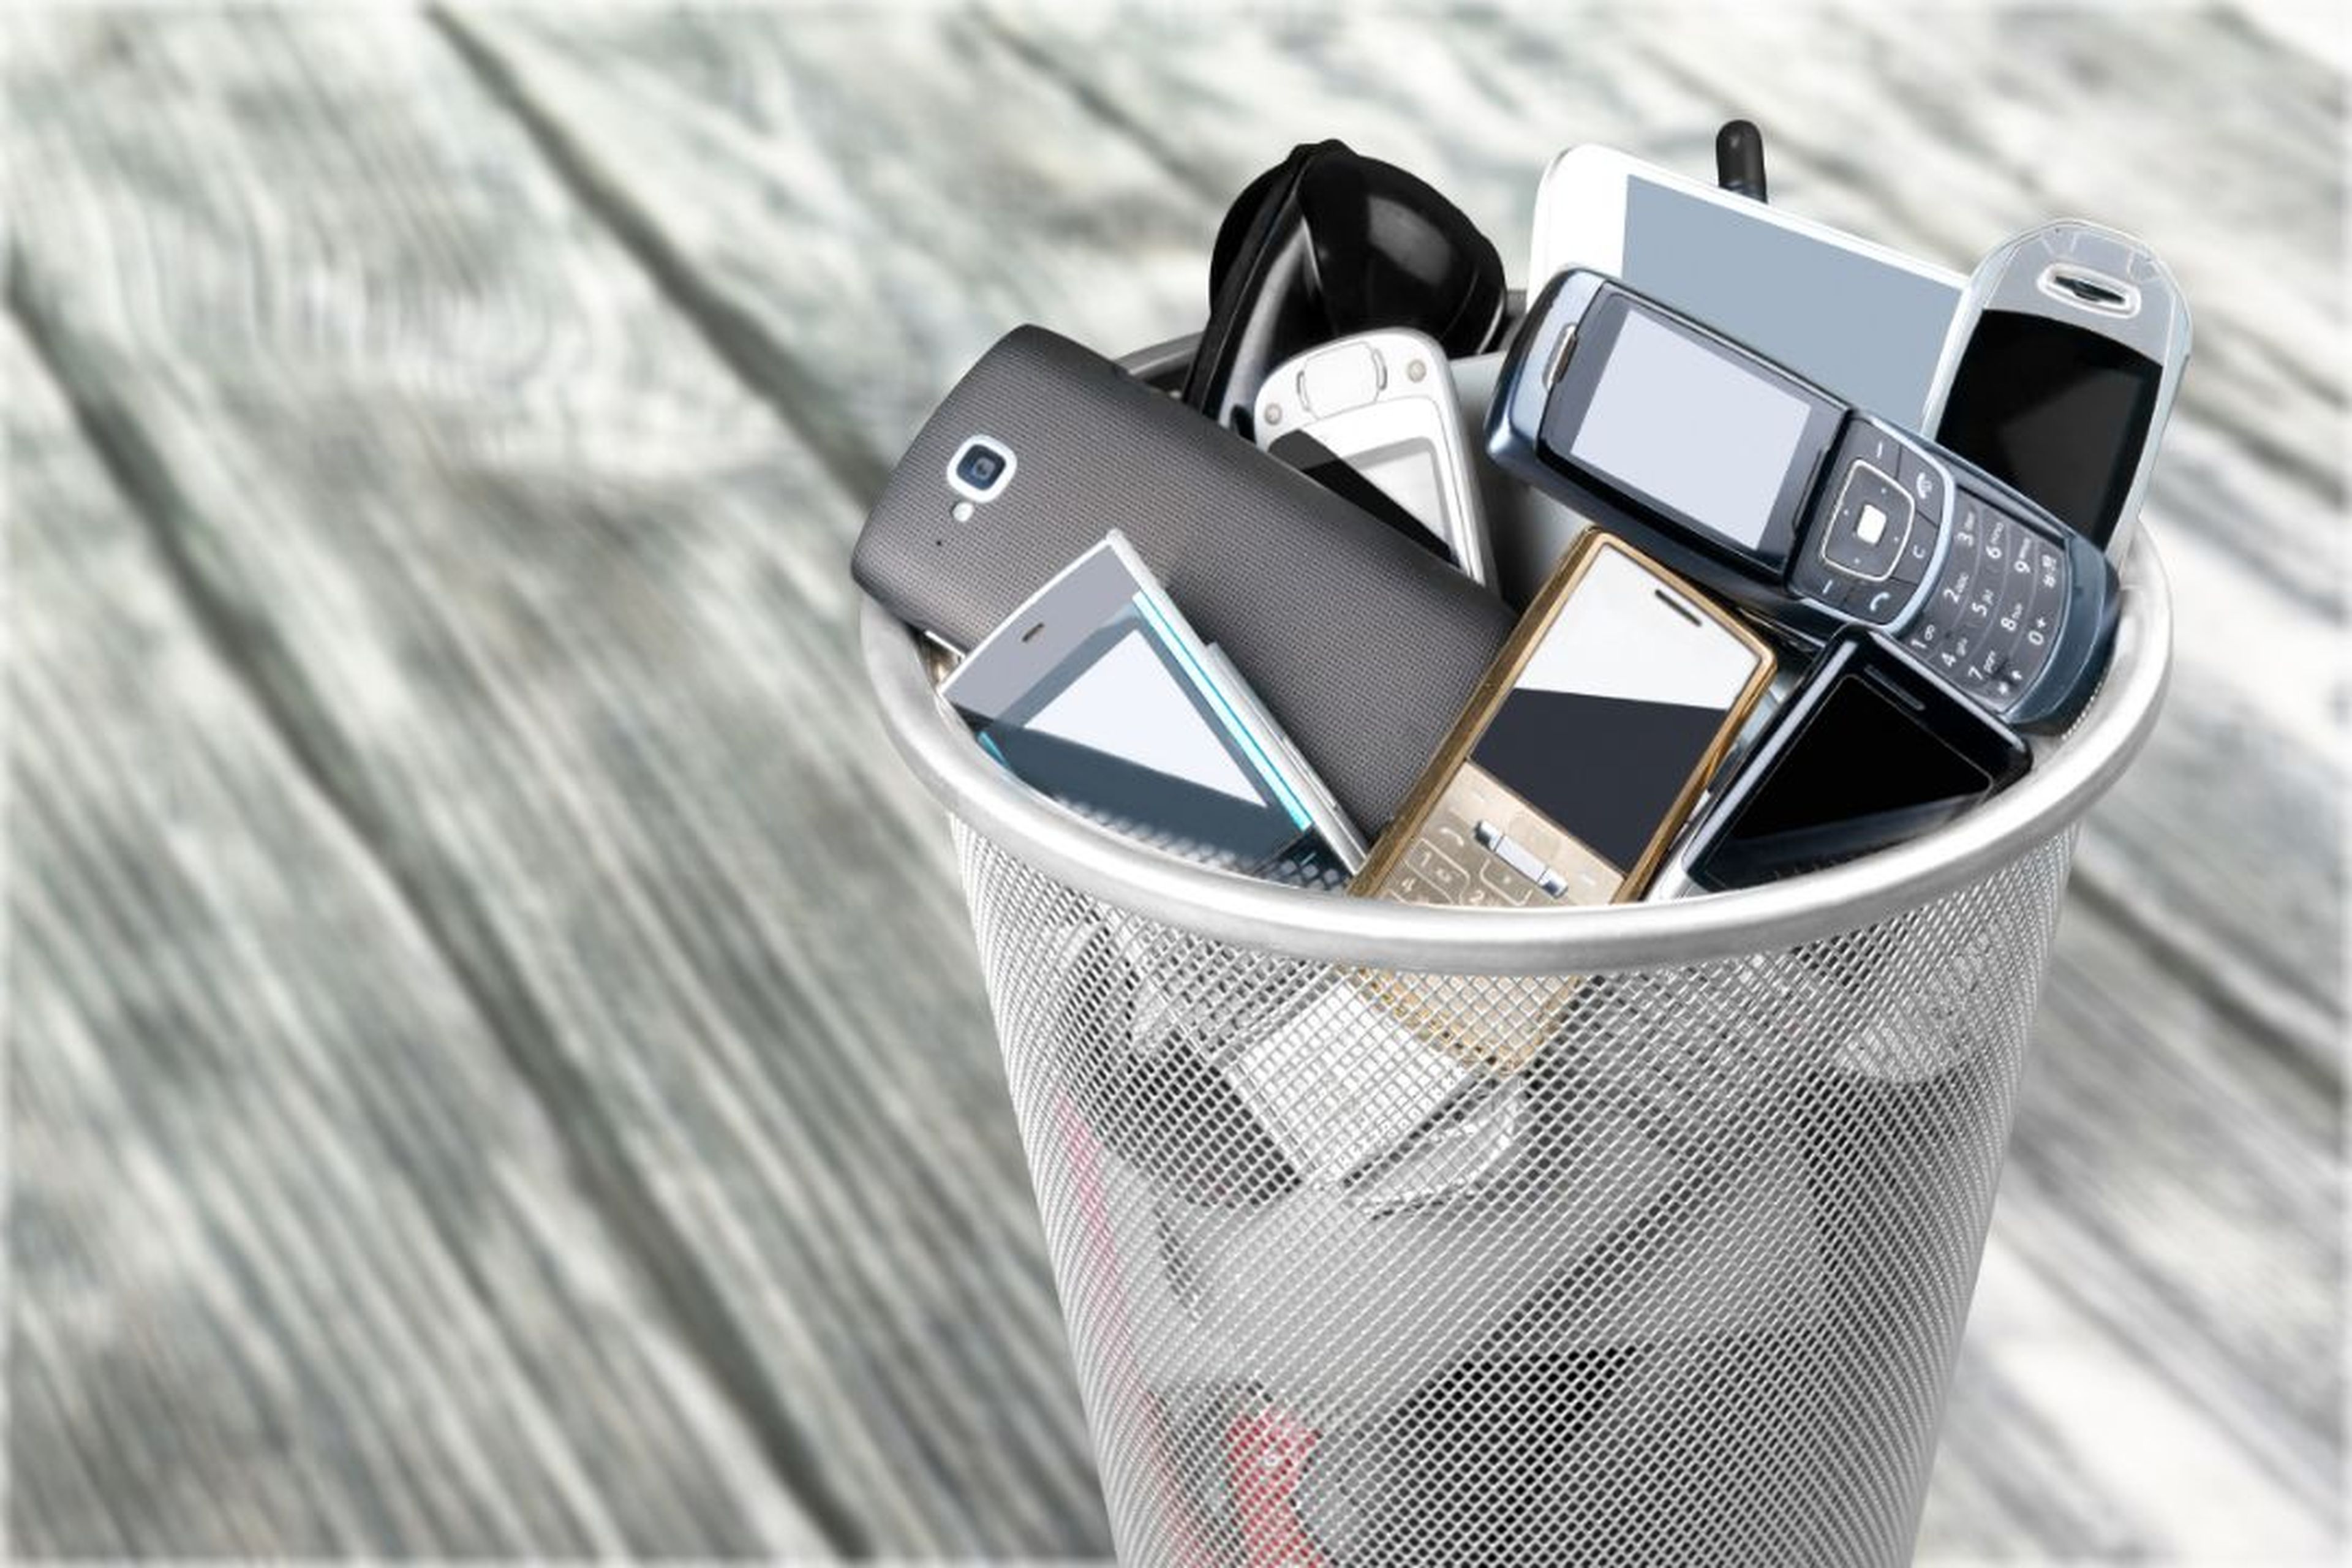 Reciclaje de móviles